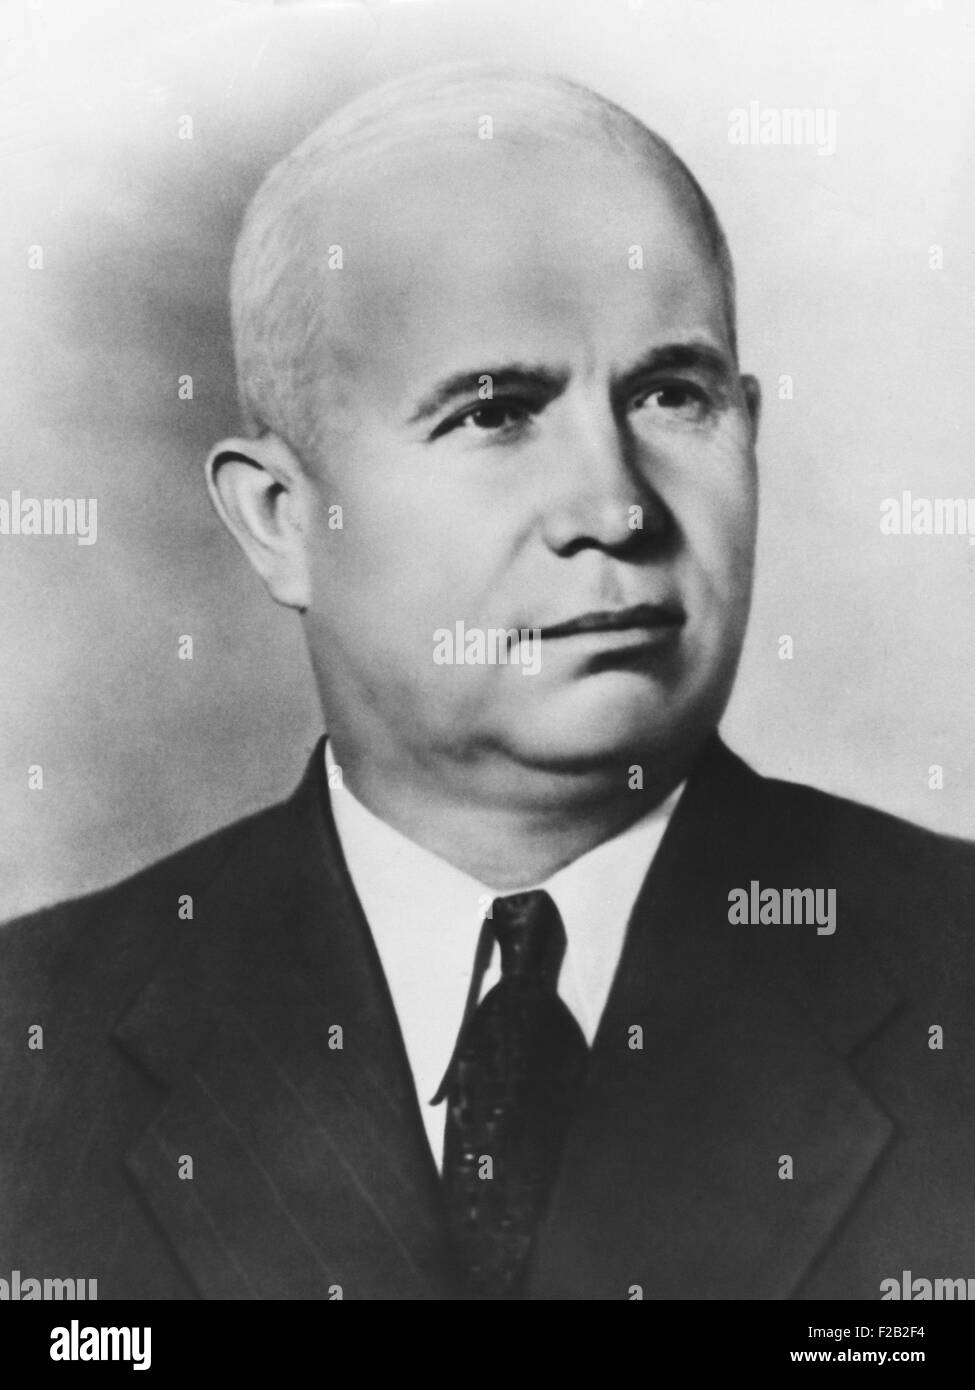 Nikita Chruschtschow als erster Sekretär des Zentralkomitees der kommunistischen Partei, Sowjetunion. Ca. 1953. (CSU 2015 8 538) Stockfoto